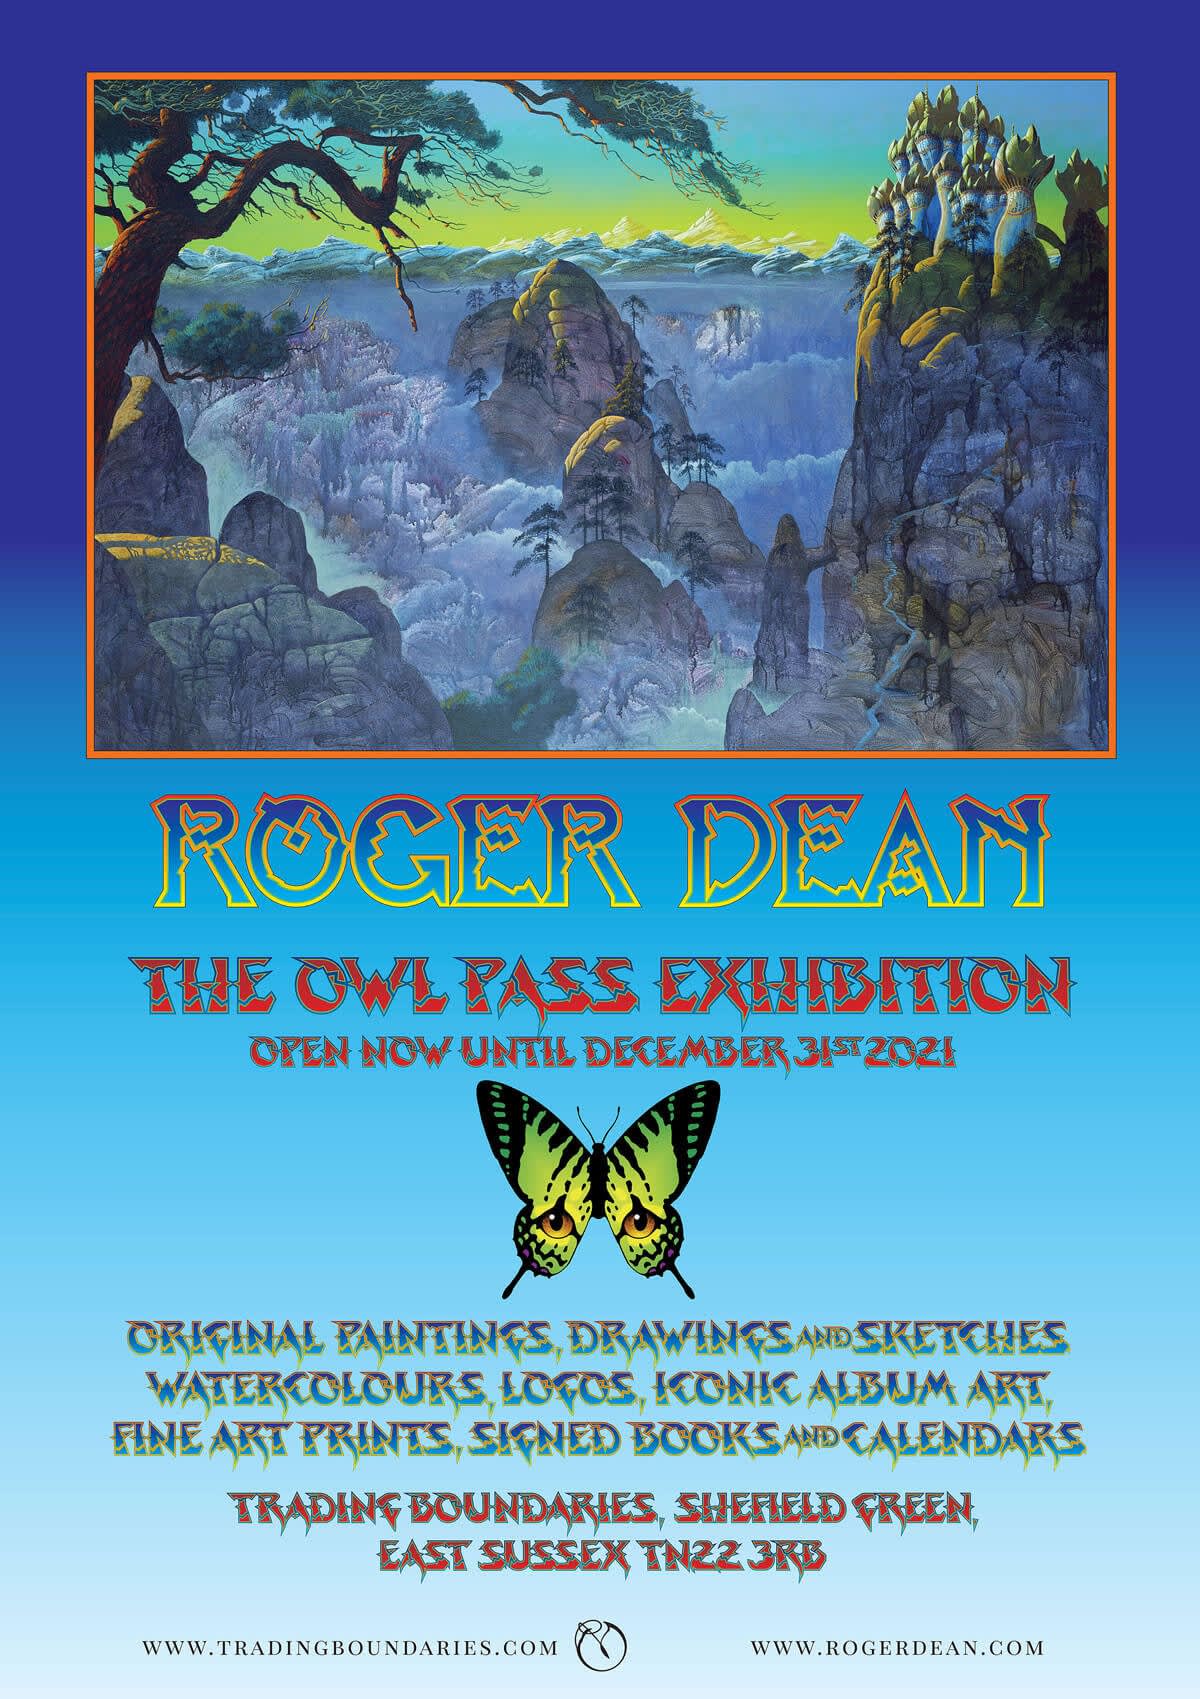  Roger Dean Artist Exhibition 2021 / 2022